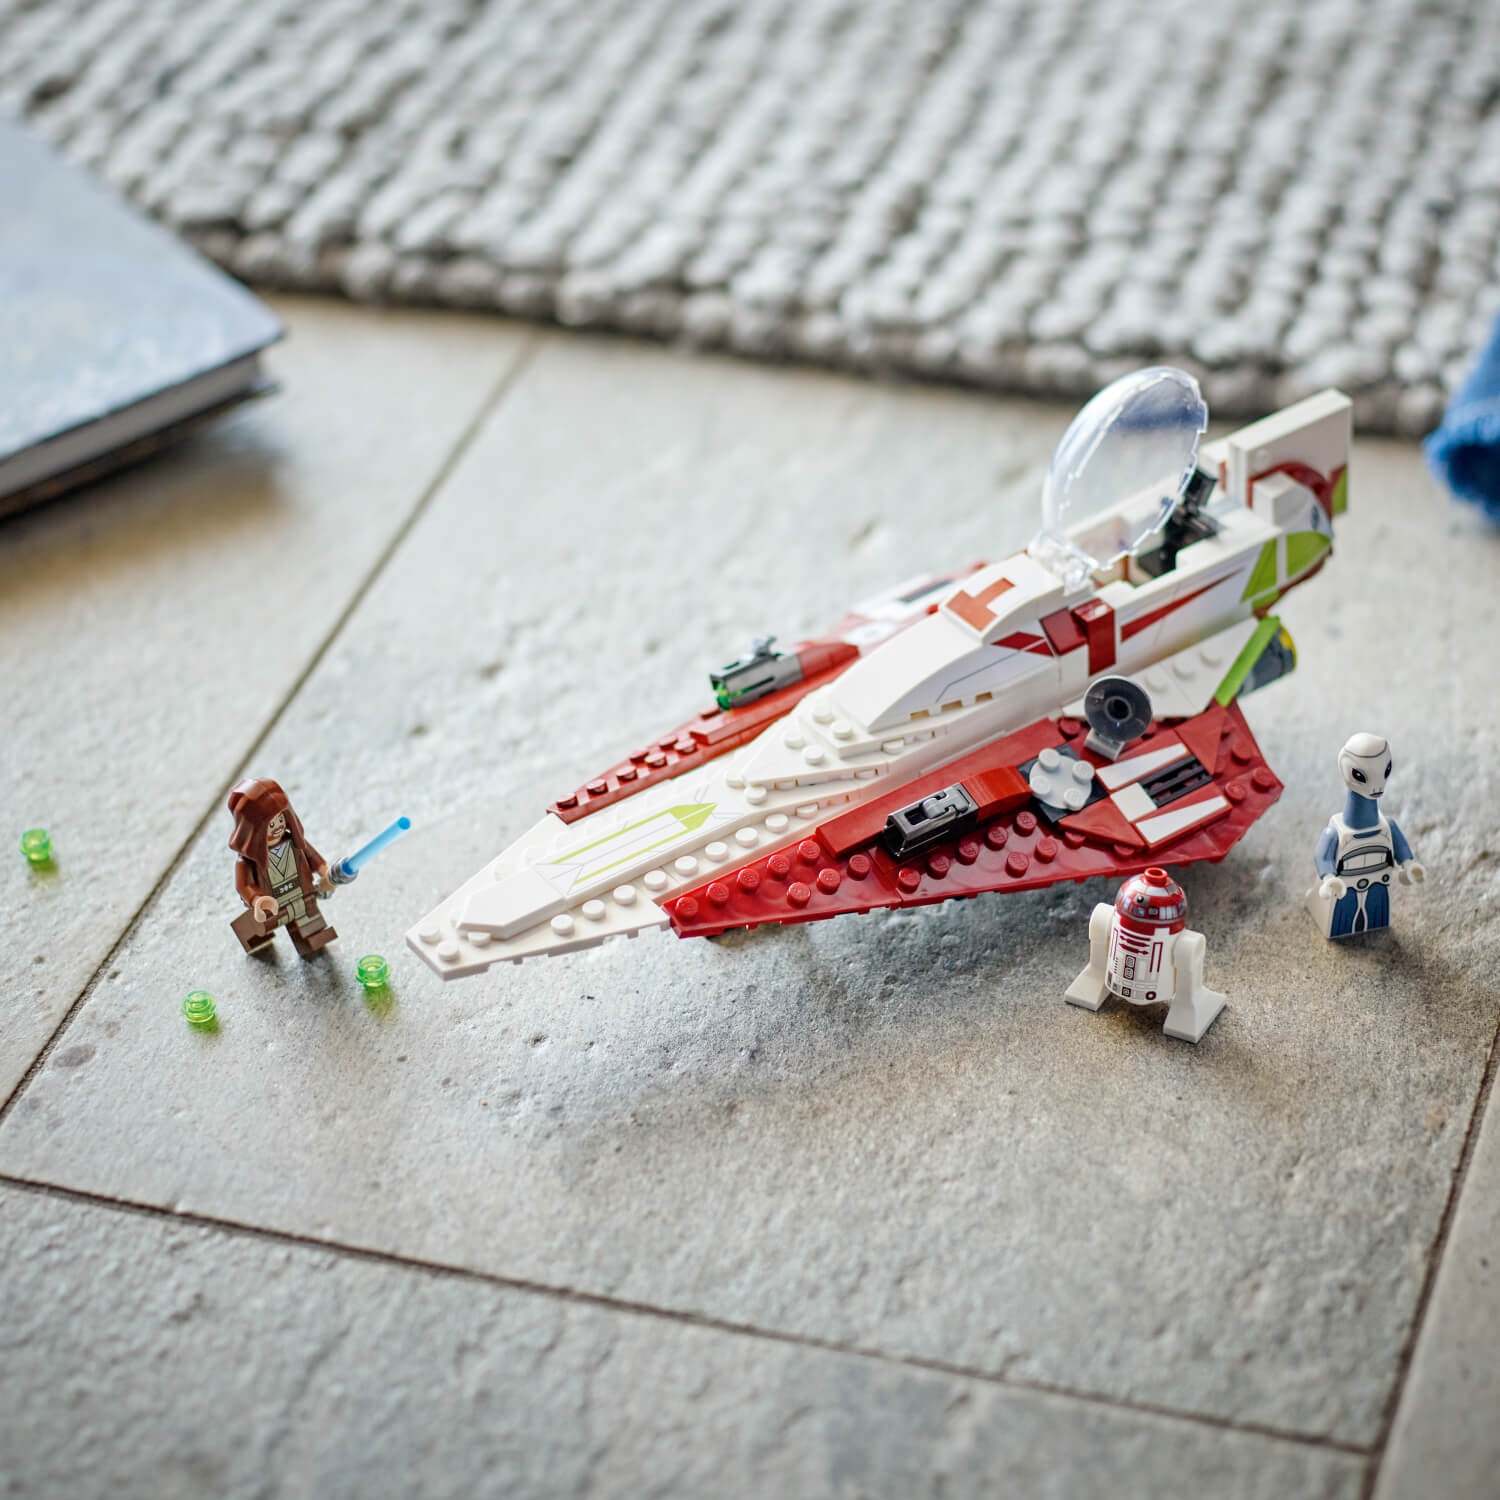 Lego 75333 Obi-Wan Kenobi-jev Jedi Starfighter™